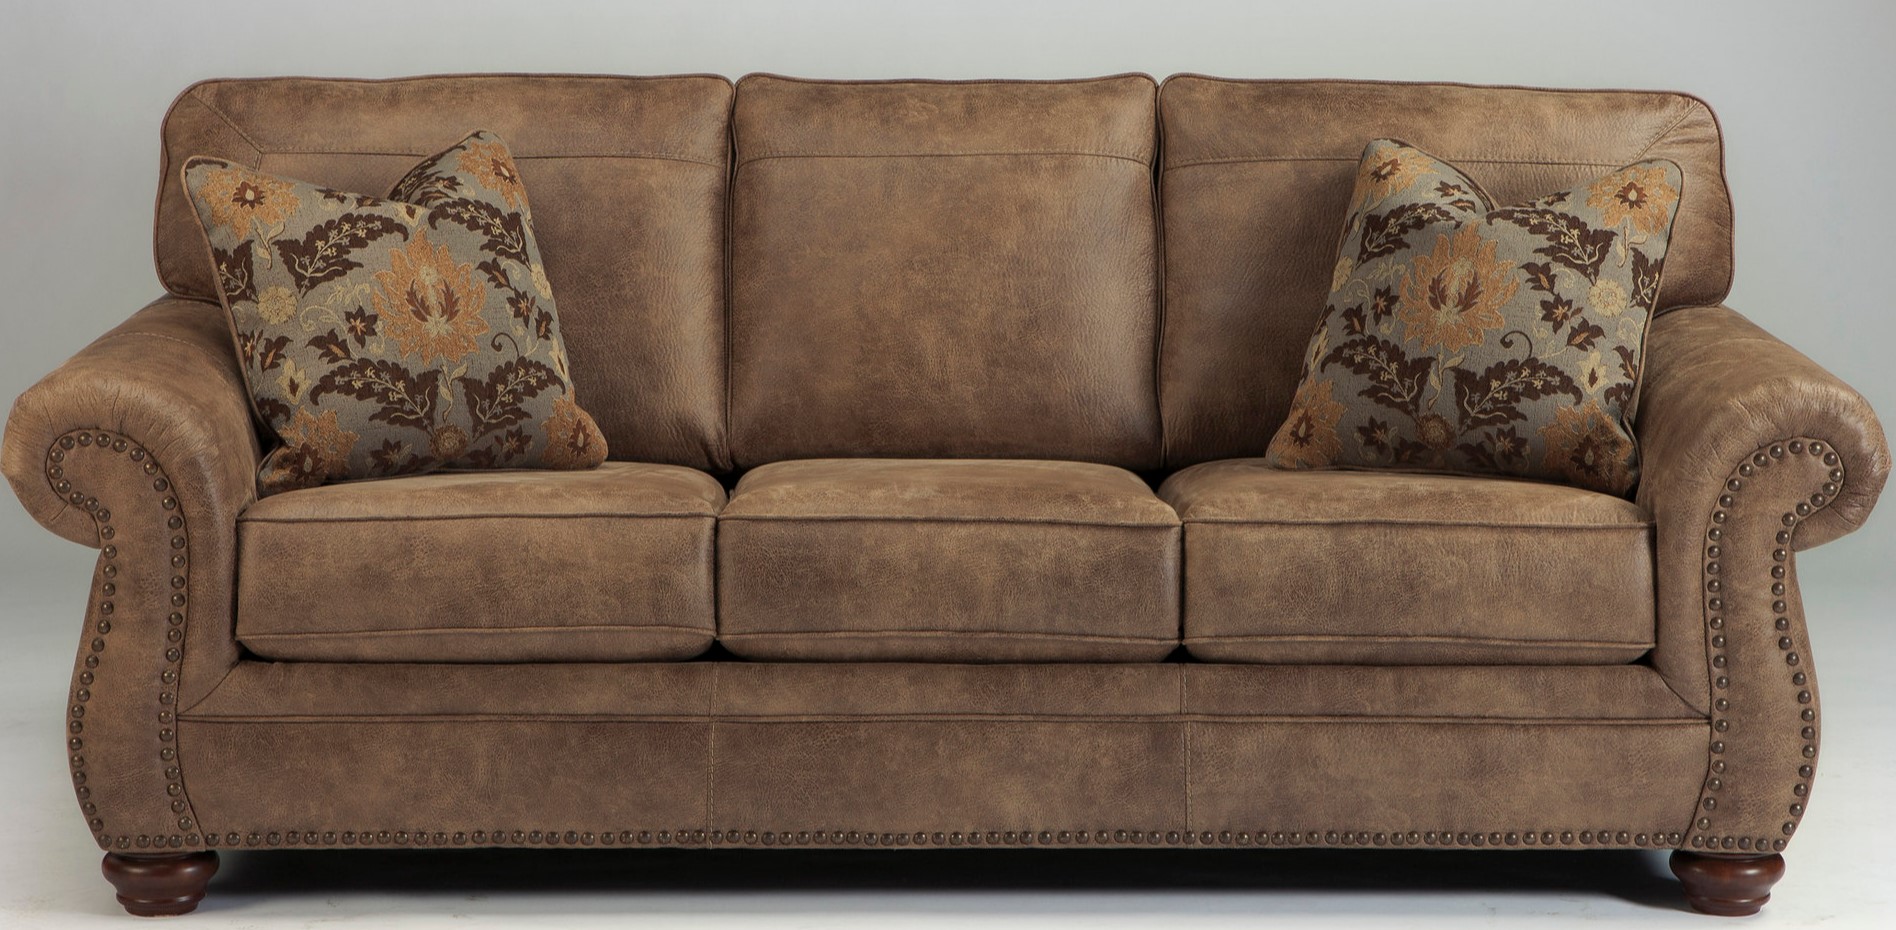 Декоративные подушки с орнаментом прекрасно подходят под стиль дивана